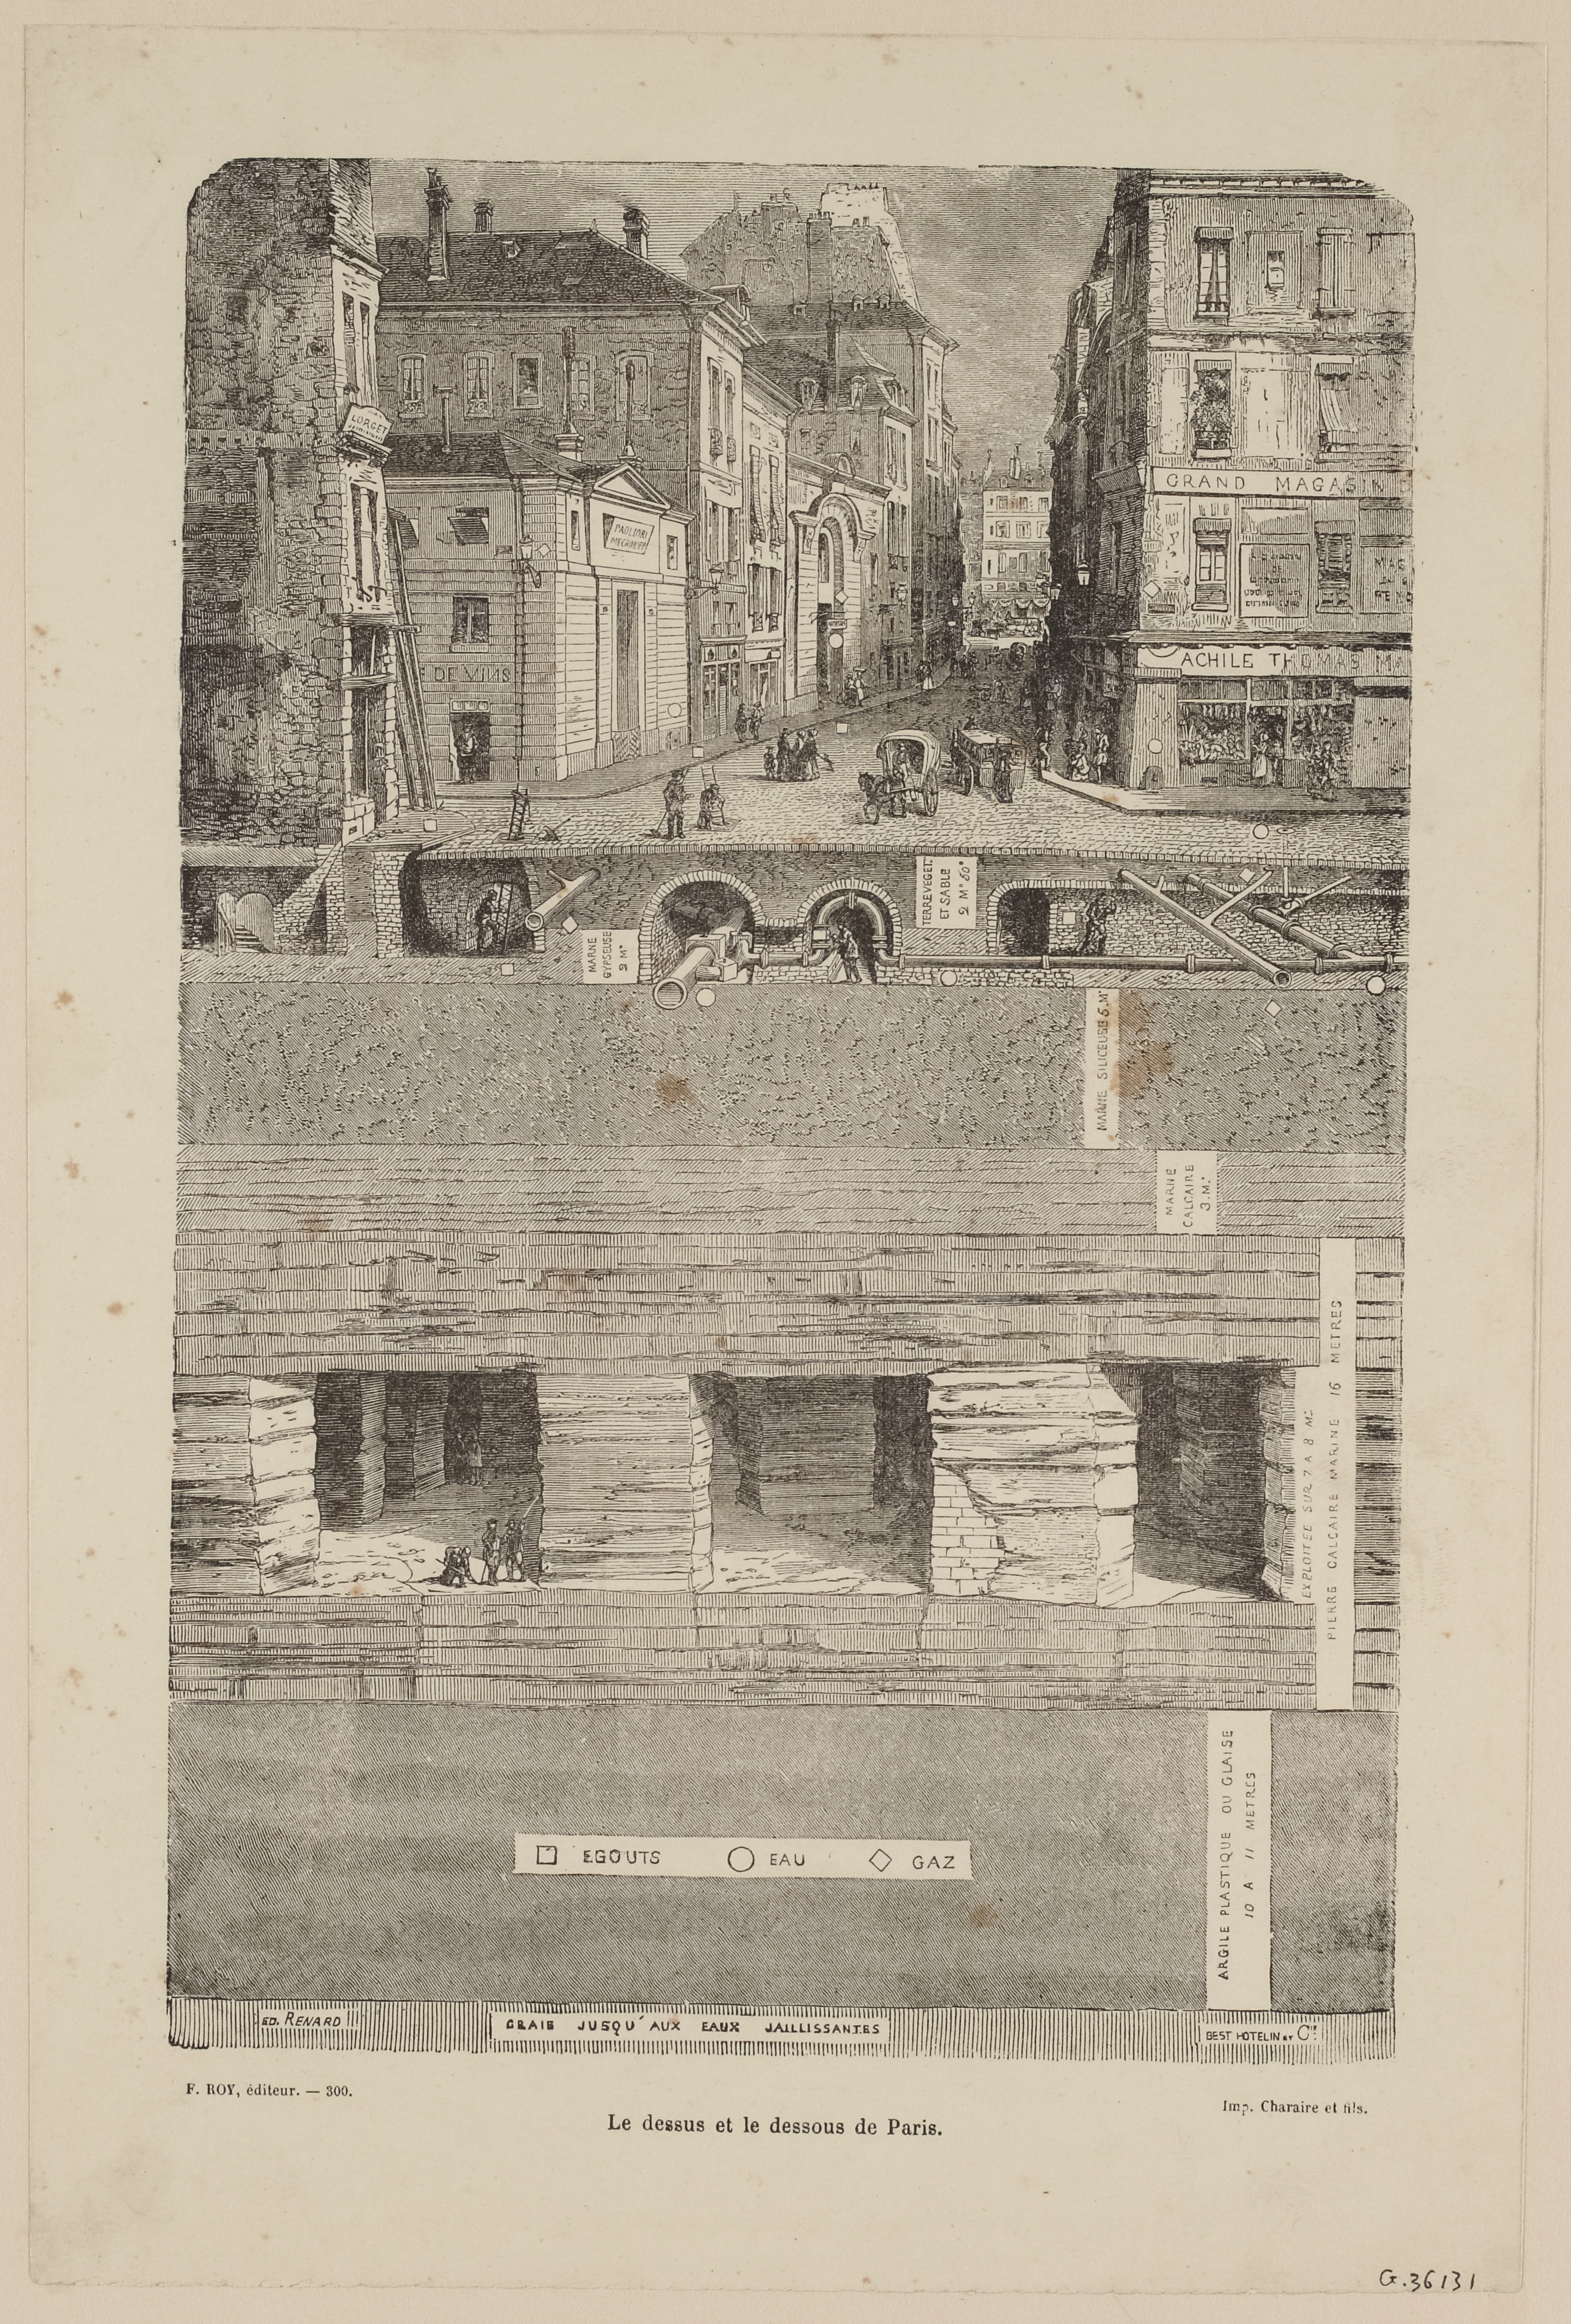 « Le dessus et le dessous de Paris ». Stich von Édouard Renard, 1880. Sammlung Musée Carnavalet, Paris. 
Bild: © Paris Musées